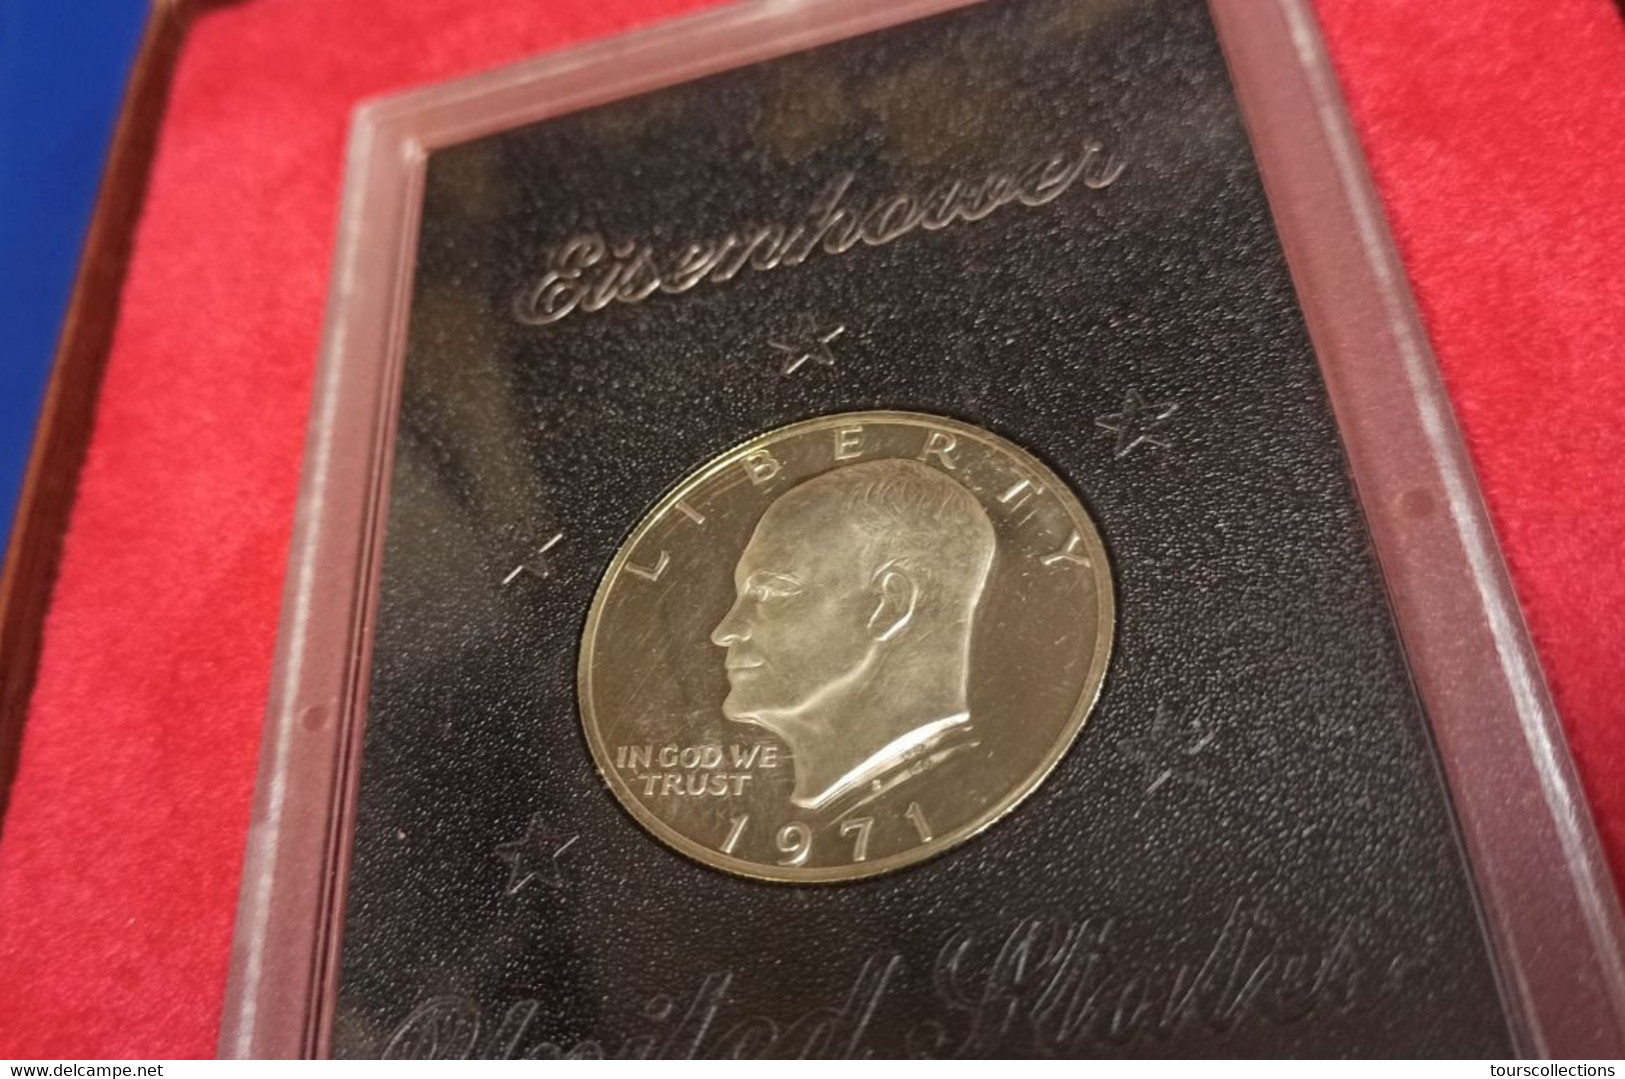 1971 S Eisenhower Silver Dollar Proof Set Scellé et dans sa boîte de présentation d'origine 1 $ Etats Unis USA